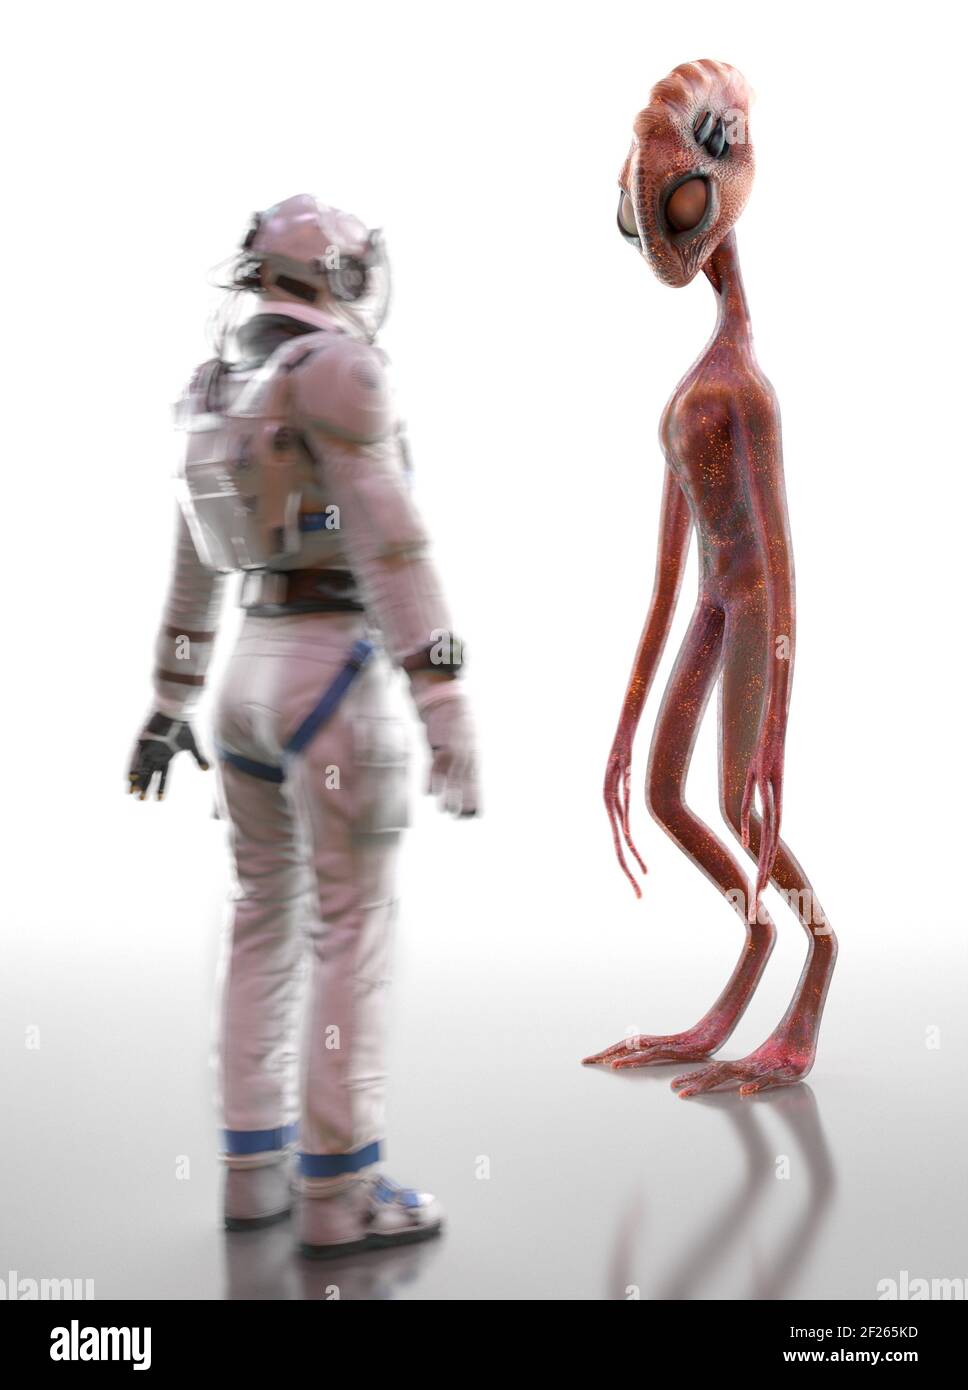 El encuentro y el conocimiento de un alienígena y un humano. Alienígena humanoide y astronauta sobre fondo blanco. Contacto extraterrestre. 3D renderizado Foto de stock